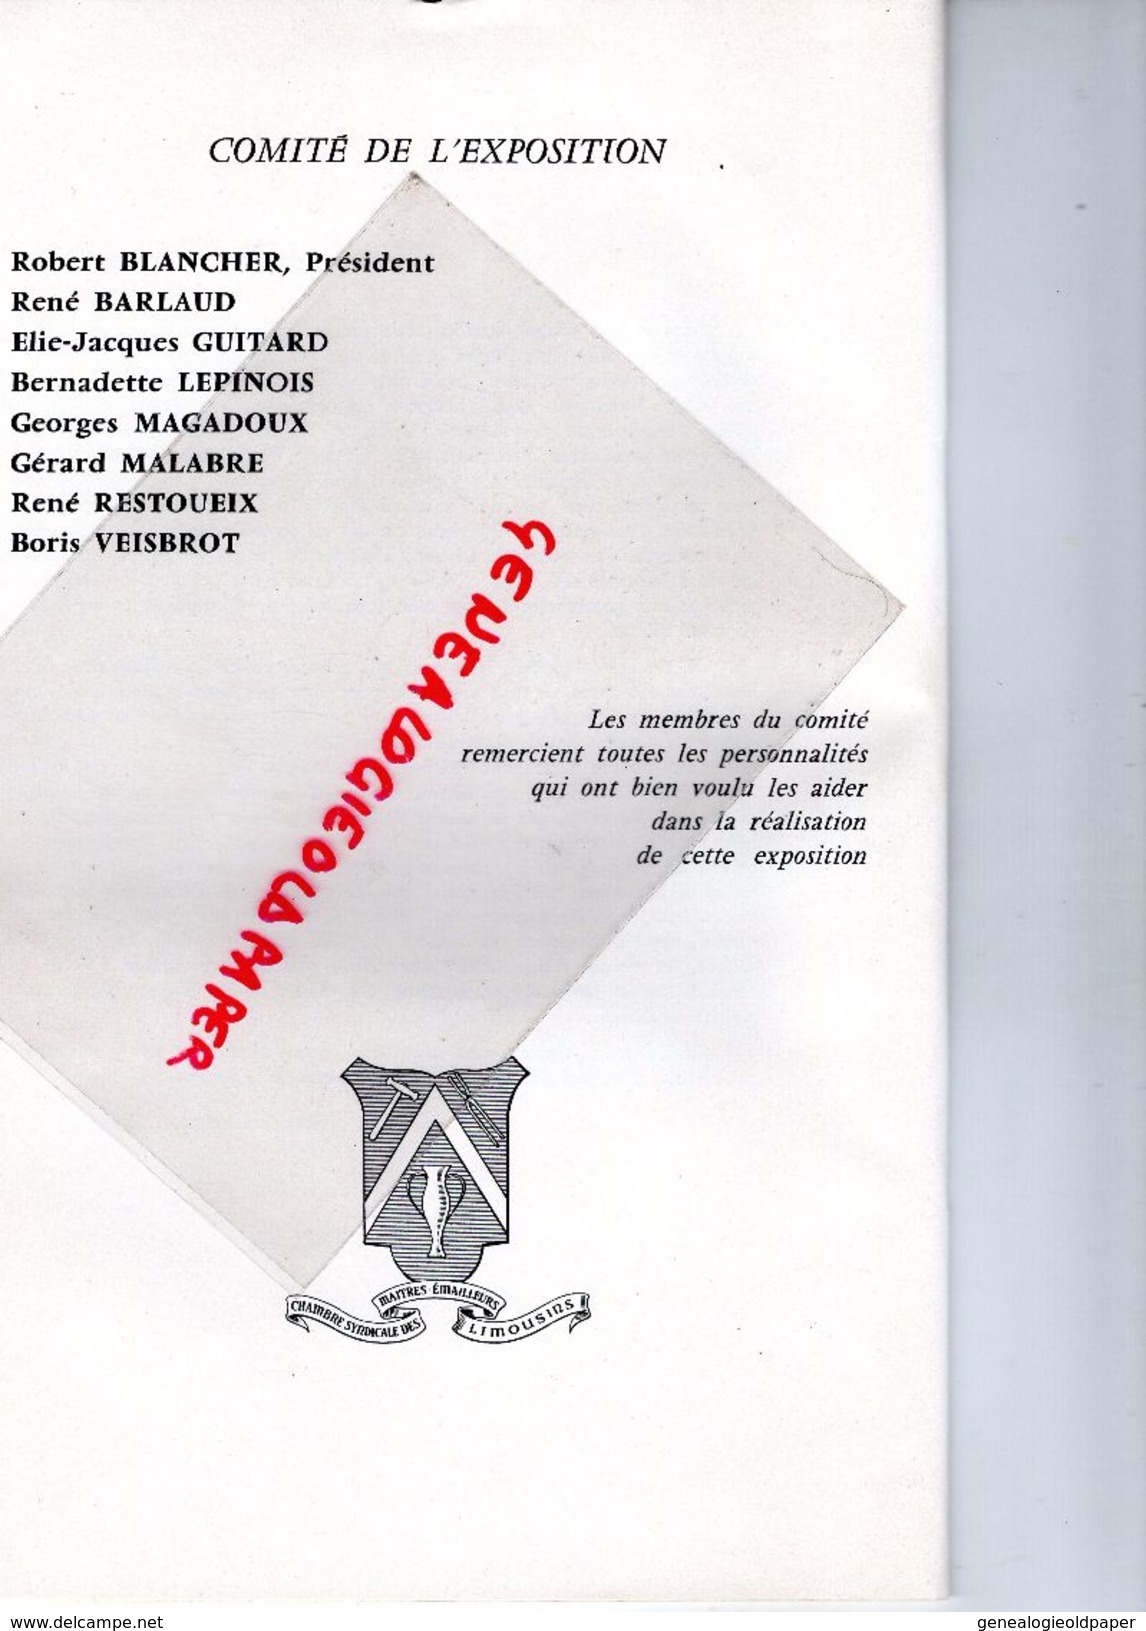 87- LIMOGES- PROGRAMME EMAUX LIMOUSINS -2E SALON 1969-CLANCIER-MARGERIT-BLANCHER-HAVILAND-BETOURNE-BARLAUD-FAURE-KLEIN - Programs